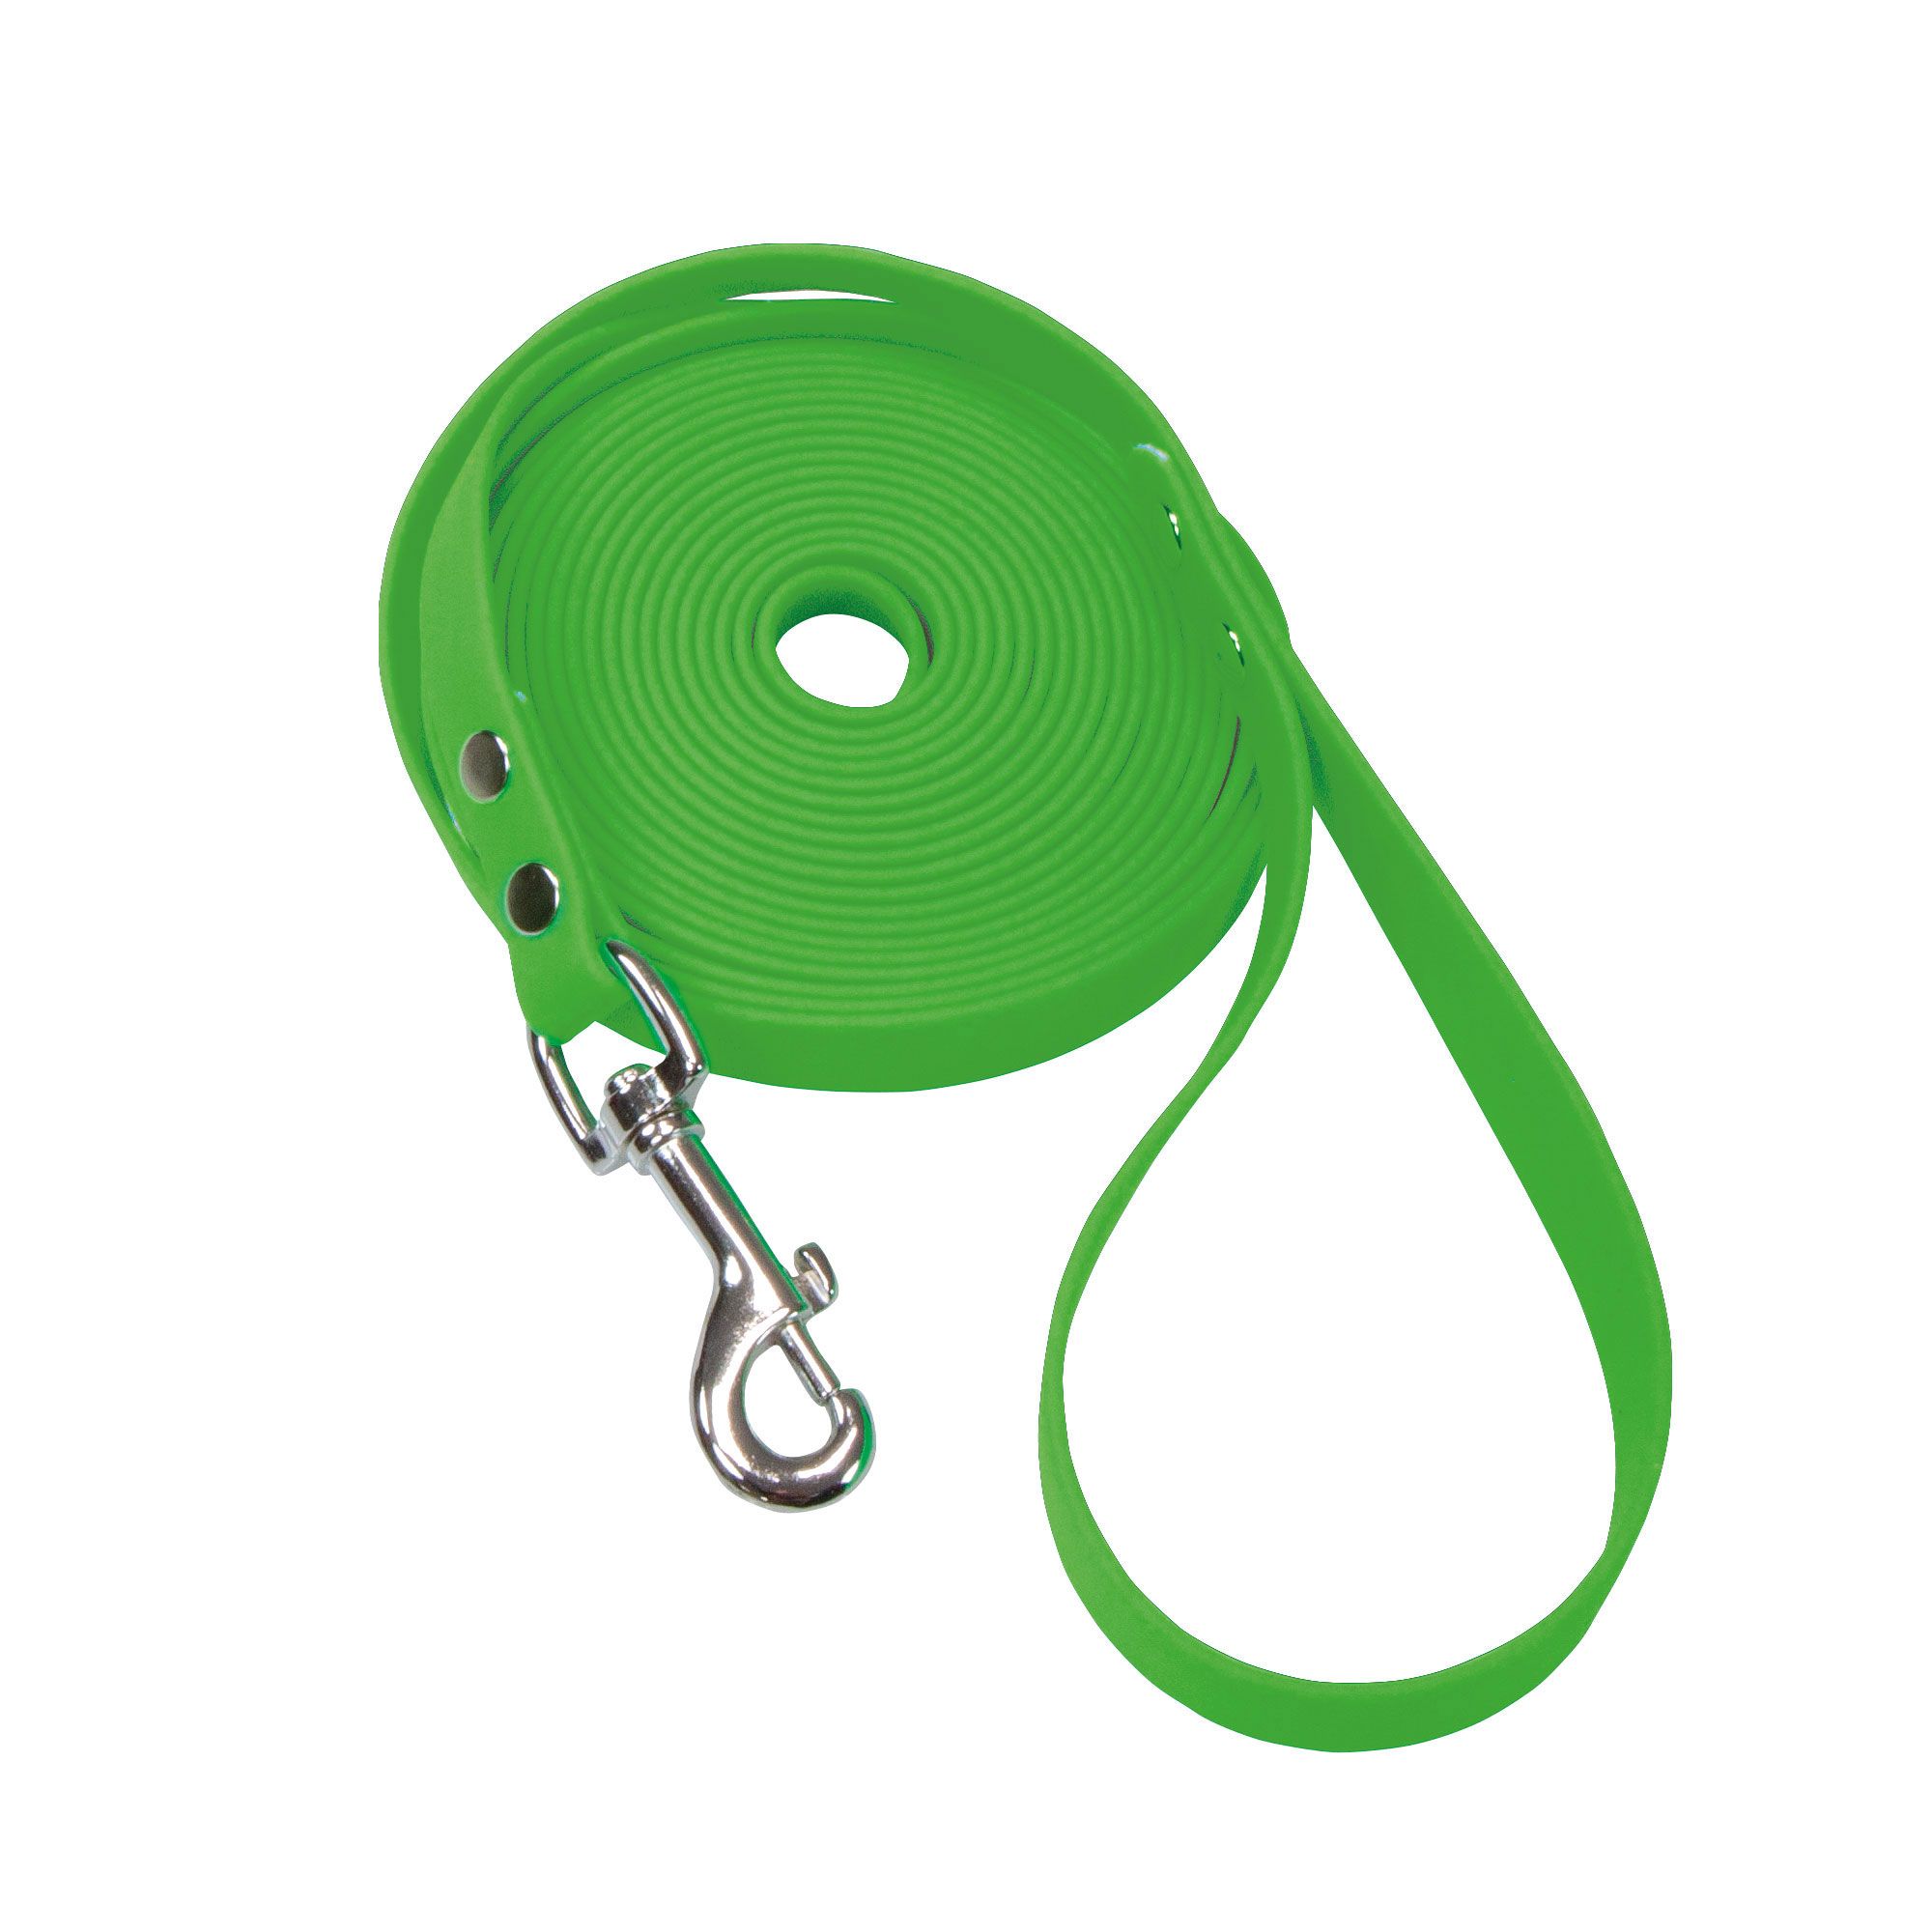 Schecker Biothane® Schleppleine mit Handschlaufe grün, 10 m / 16mm Hundeleine